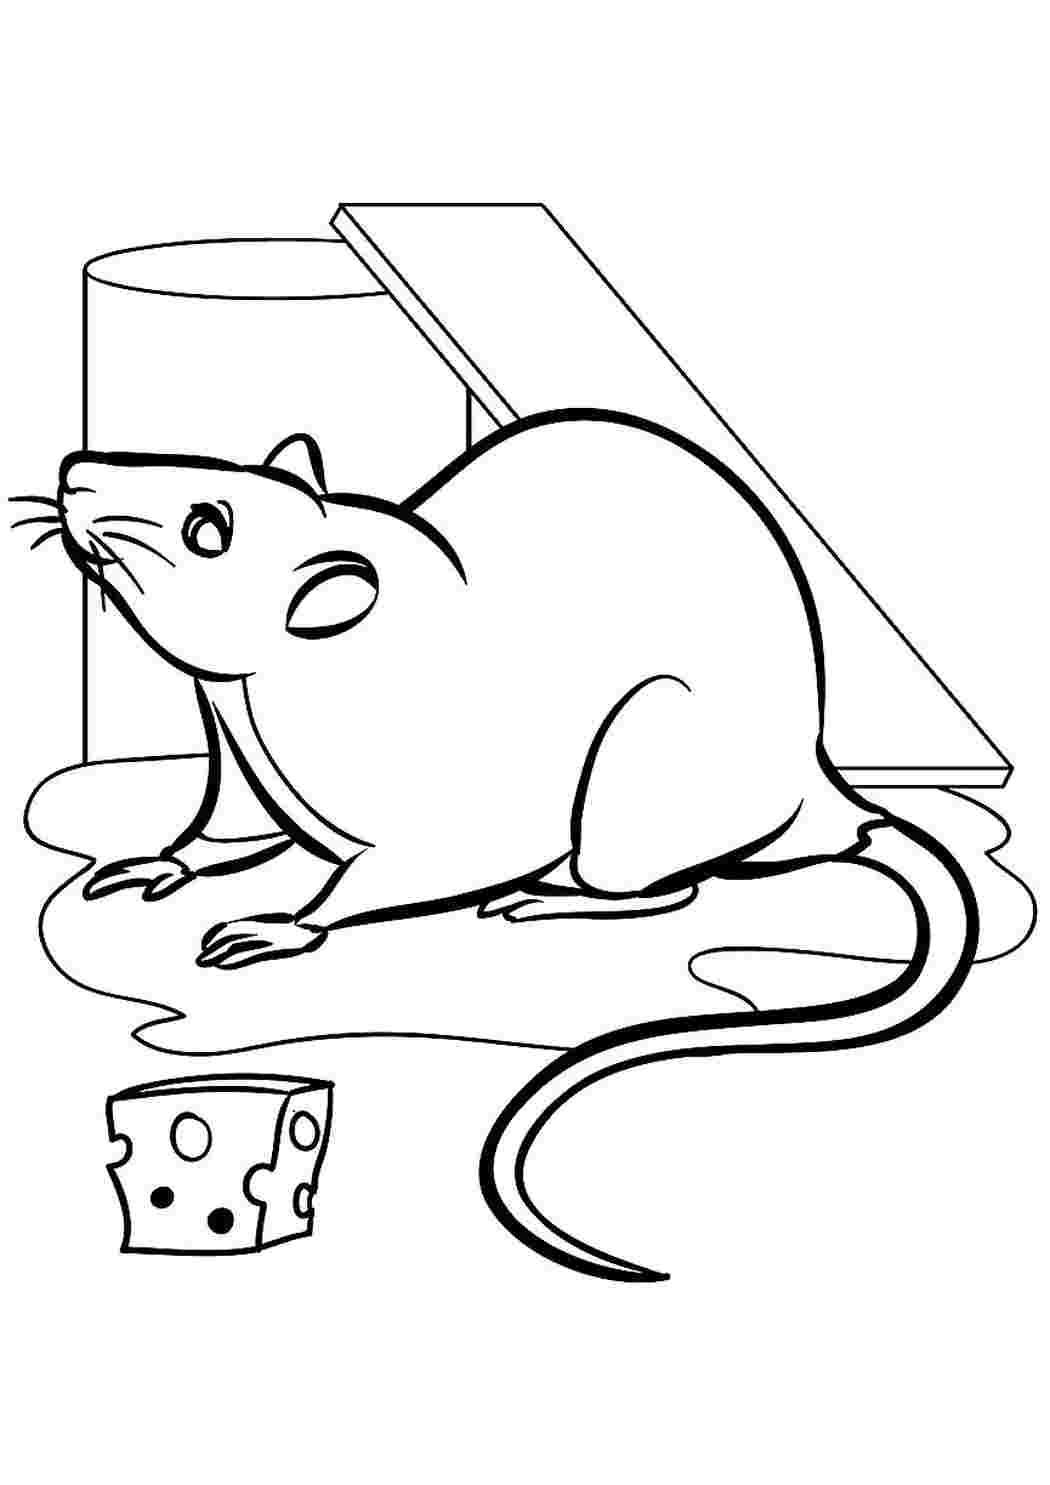 Раскраска мышь распечатать. Раскраска мышка. Крыса раскраска. Крыса раскраска для детей. Мышка и сыр раскраска.